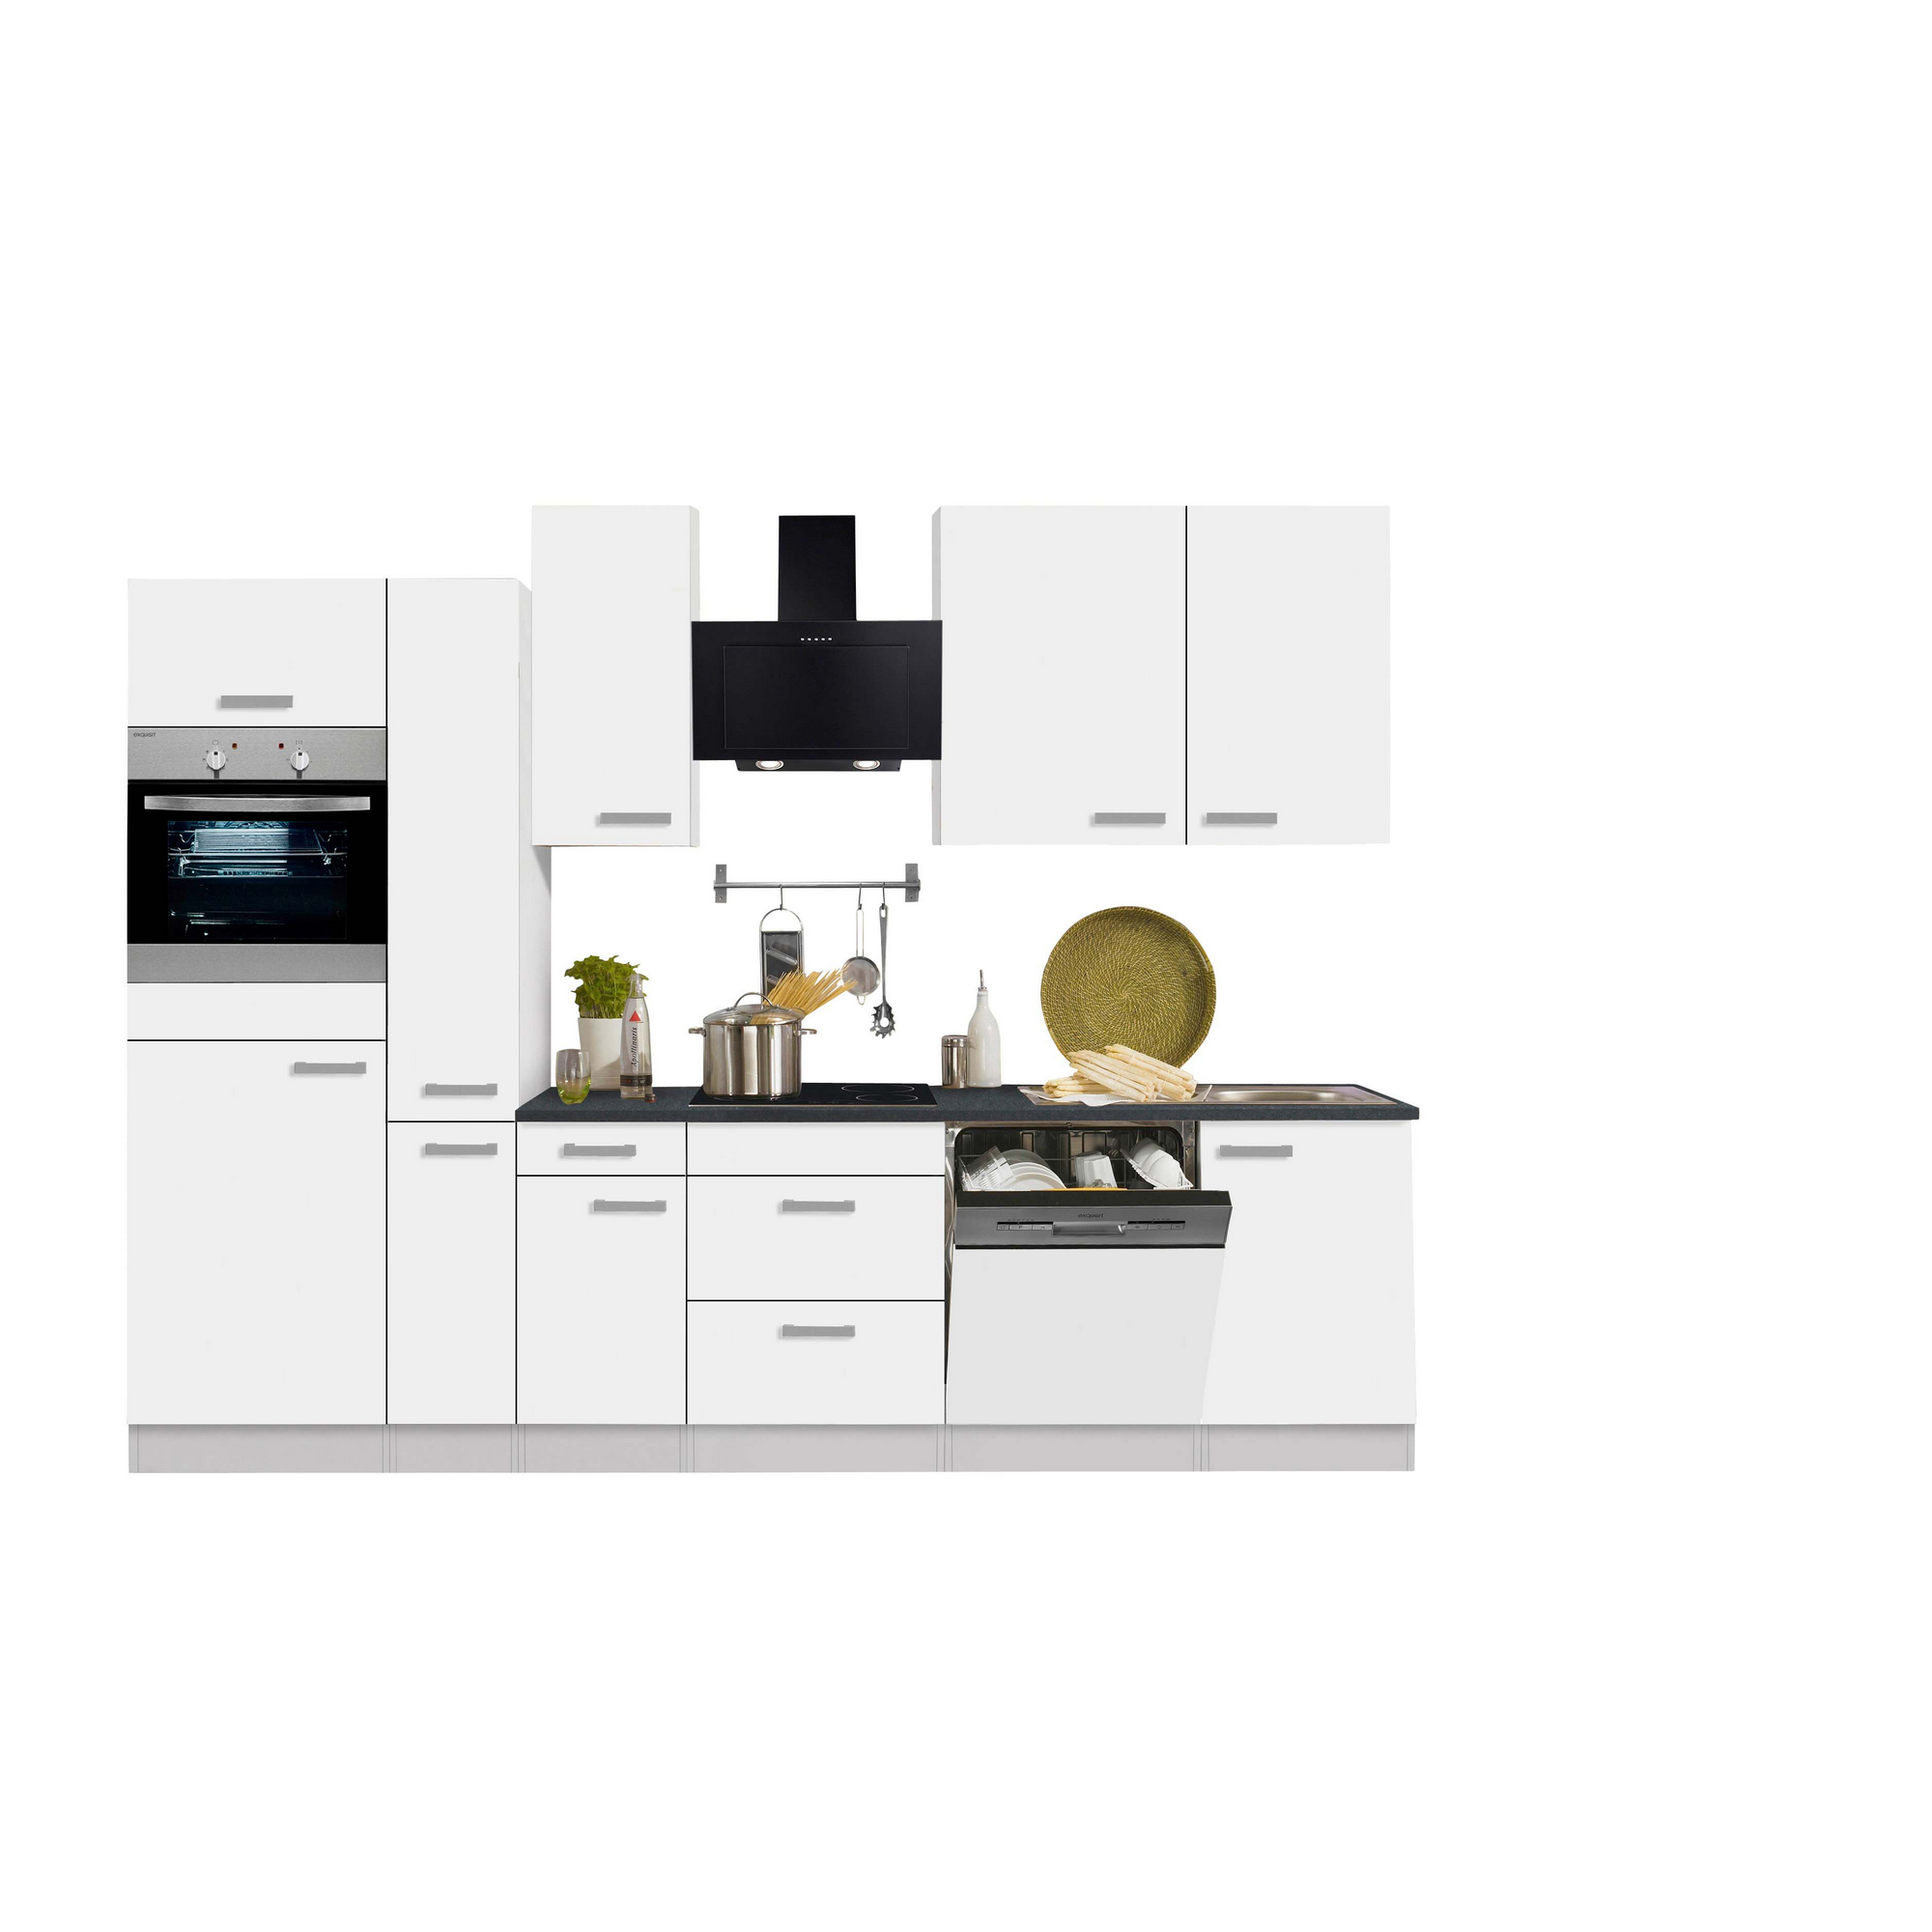 Küchenzeile mit E-Geräten 'OPTIkompakt Oslo' weiß/anthrazit 300 cm + product picture